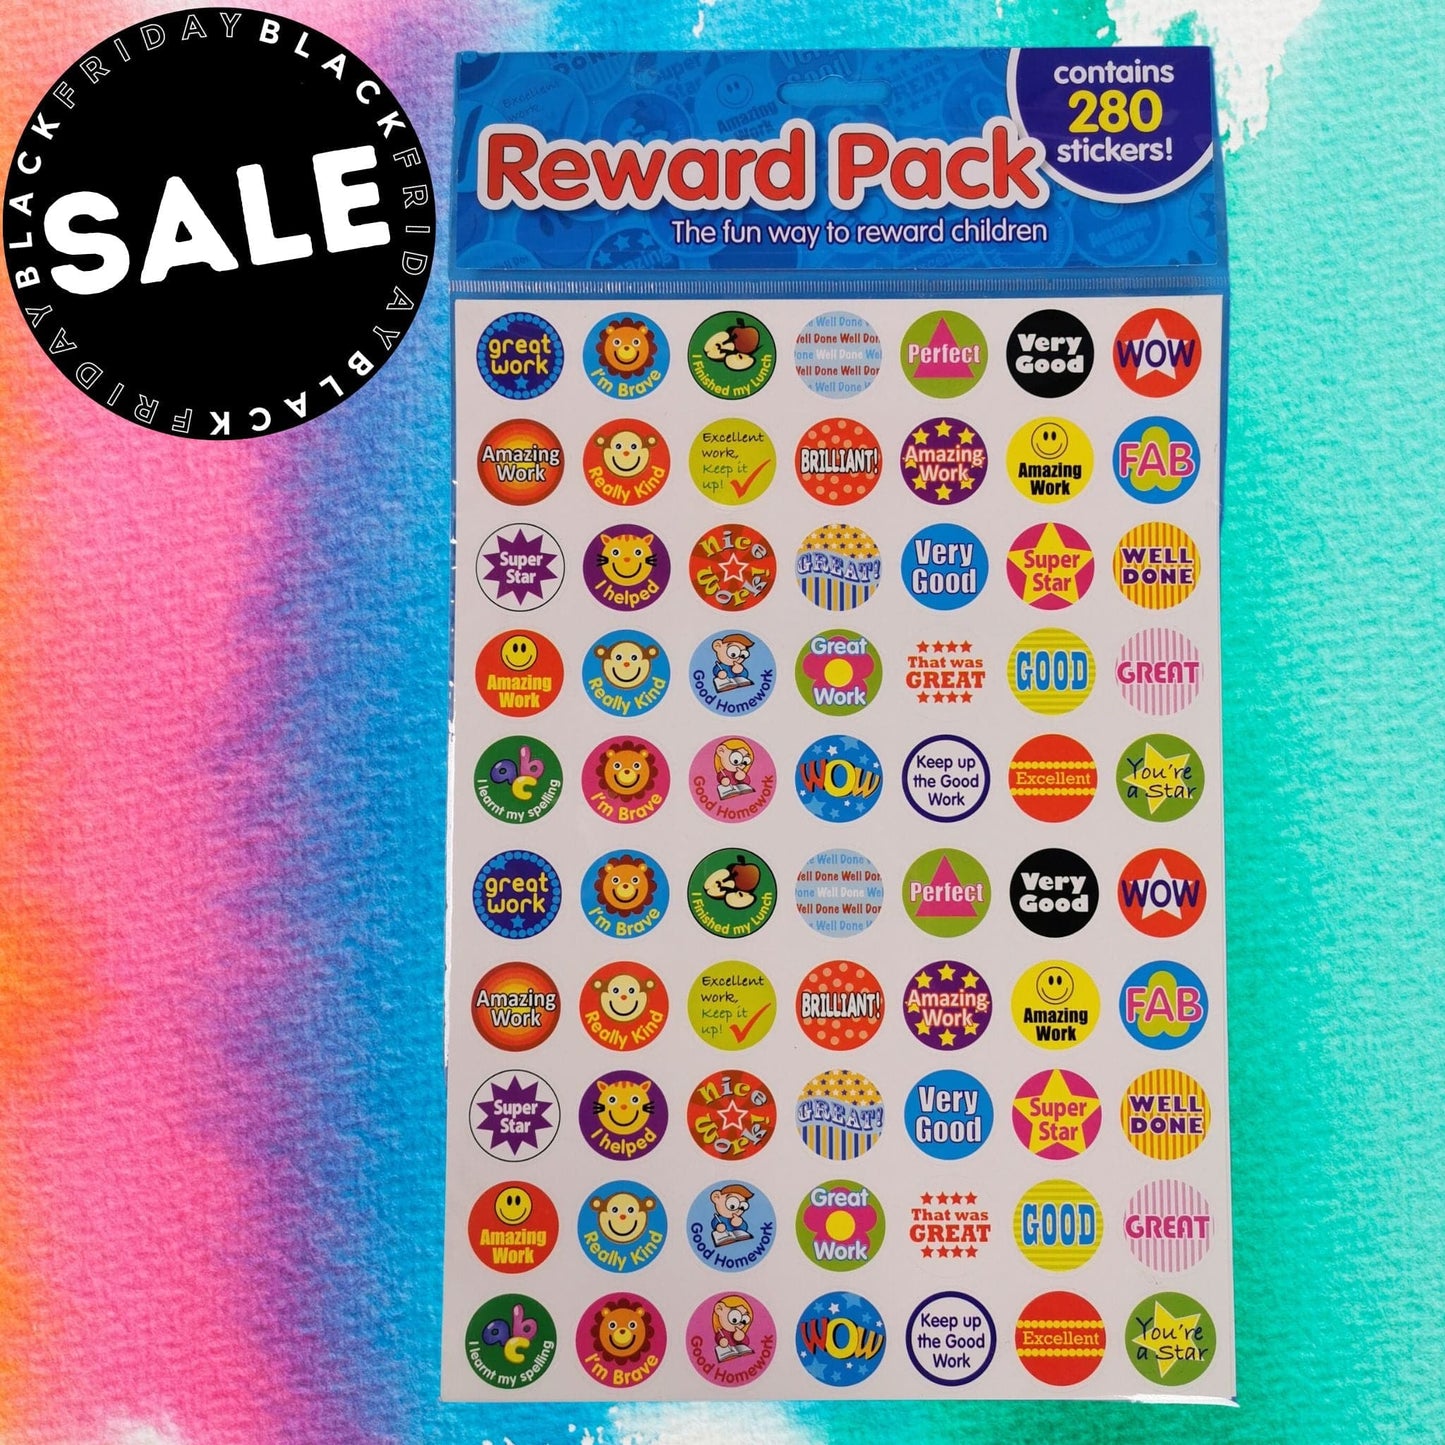 Reward Sticker Pack 280 Stickers